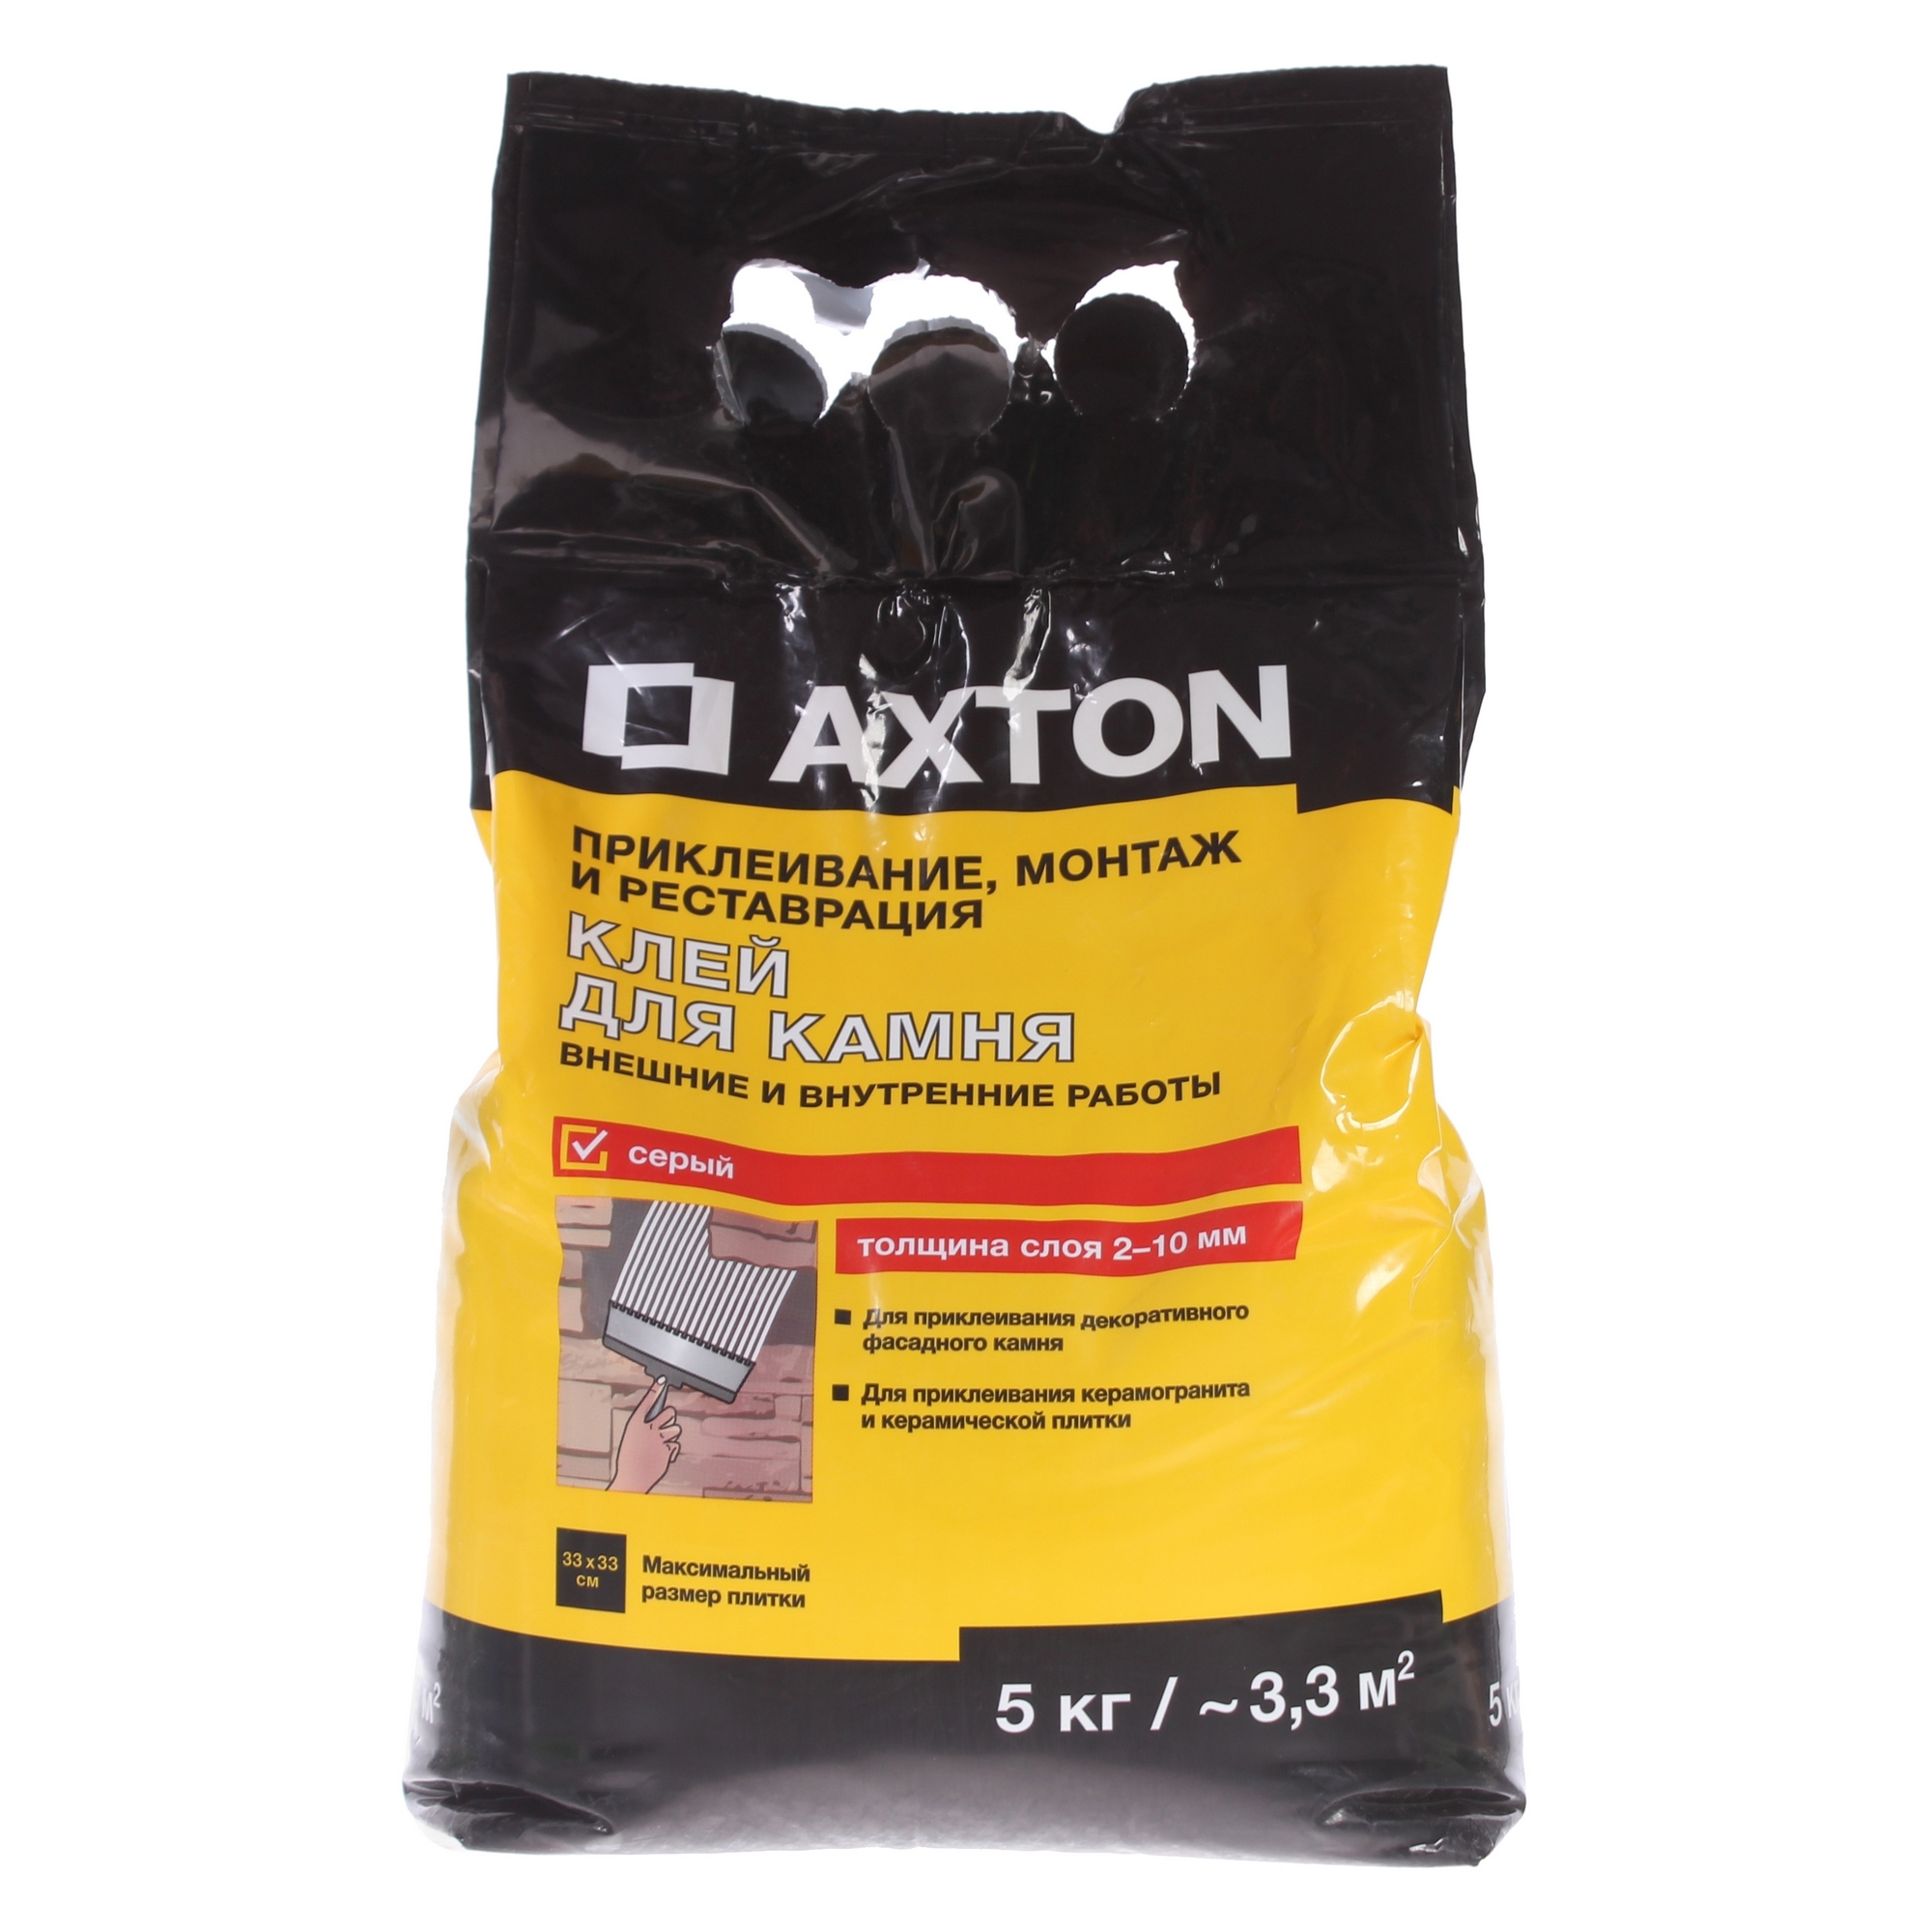 81946329 Клей для камня 5 кг цвет серый Axton STLM-0014397 AXTON